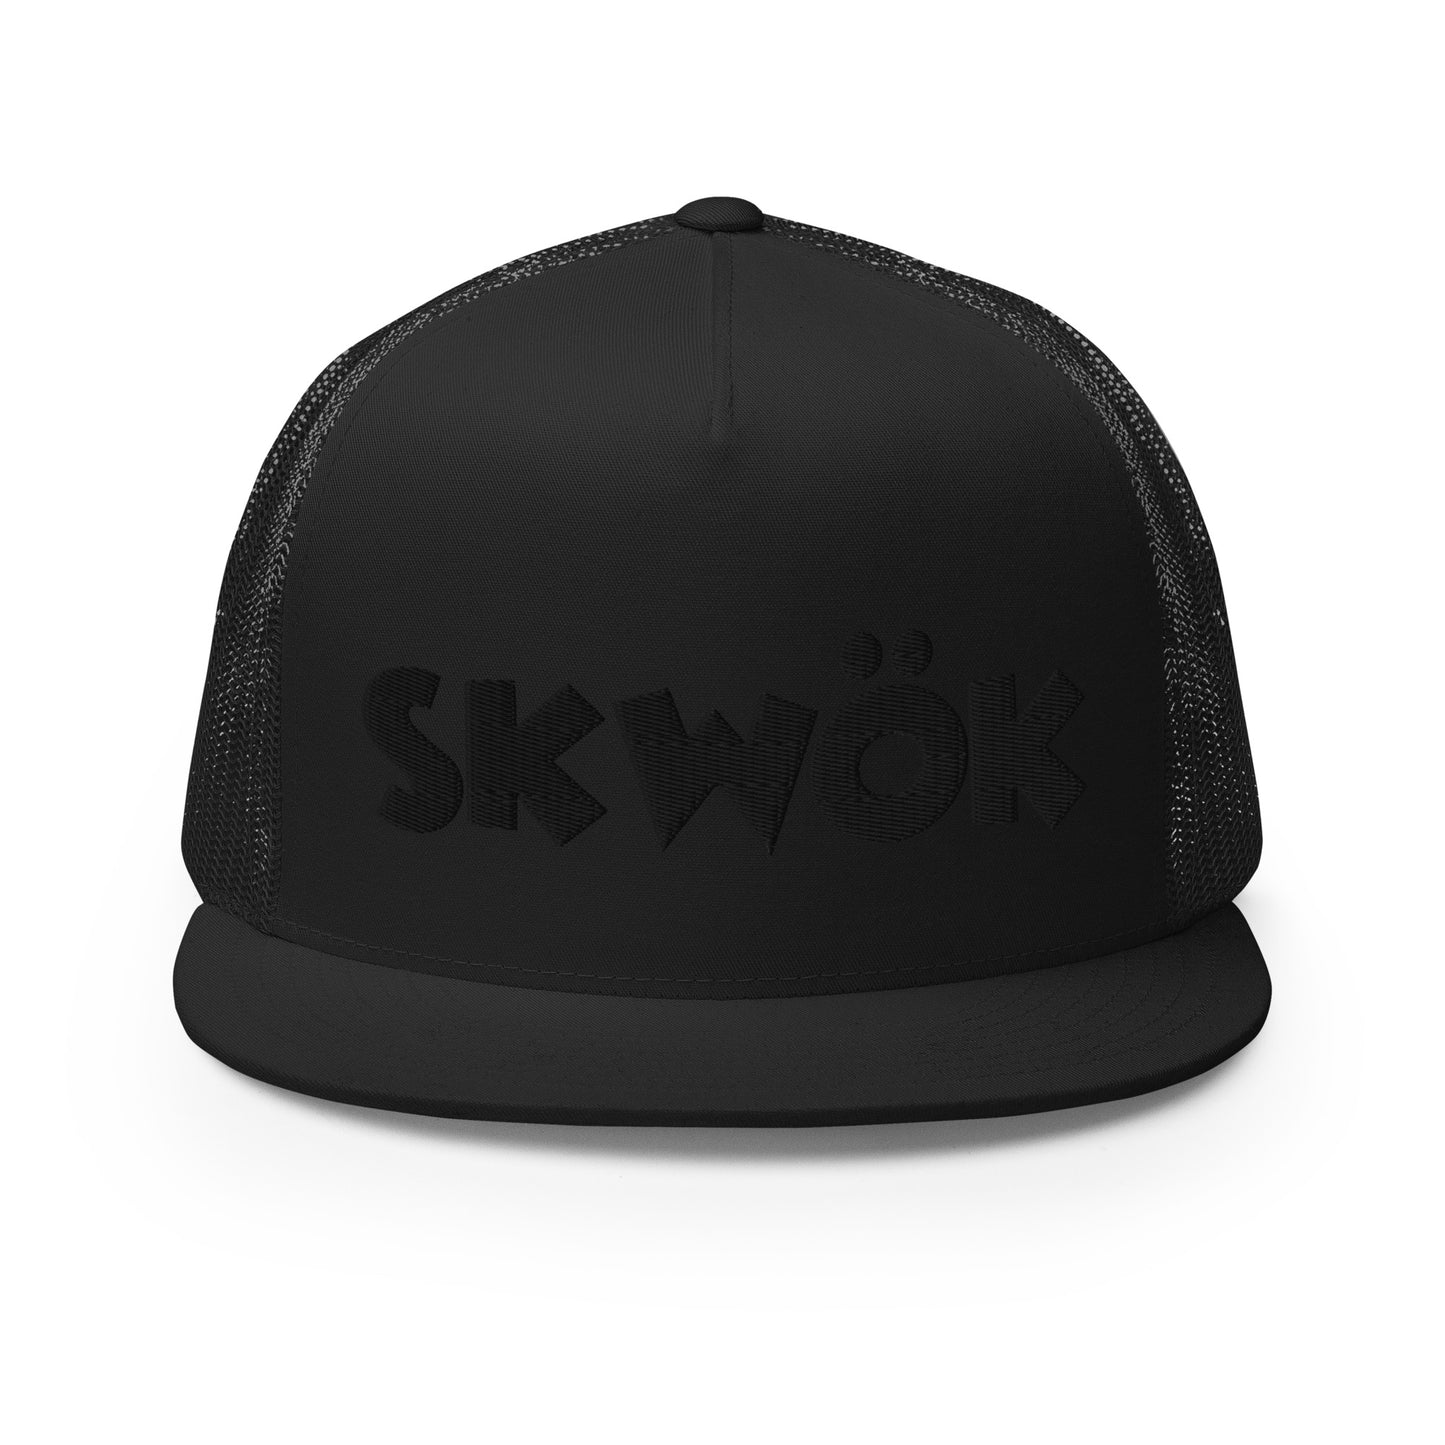 Skwok Brand / Hat / Trucker Cap / OG Logo / 3d Puff / Black / Black